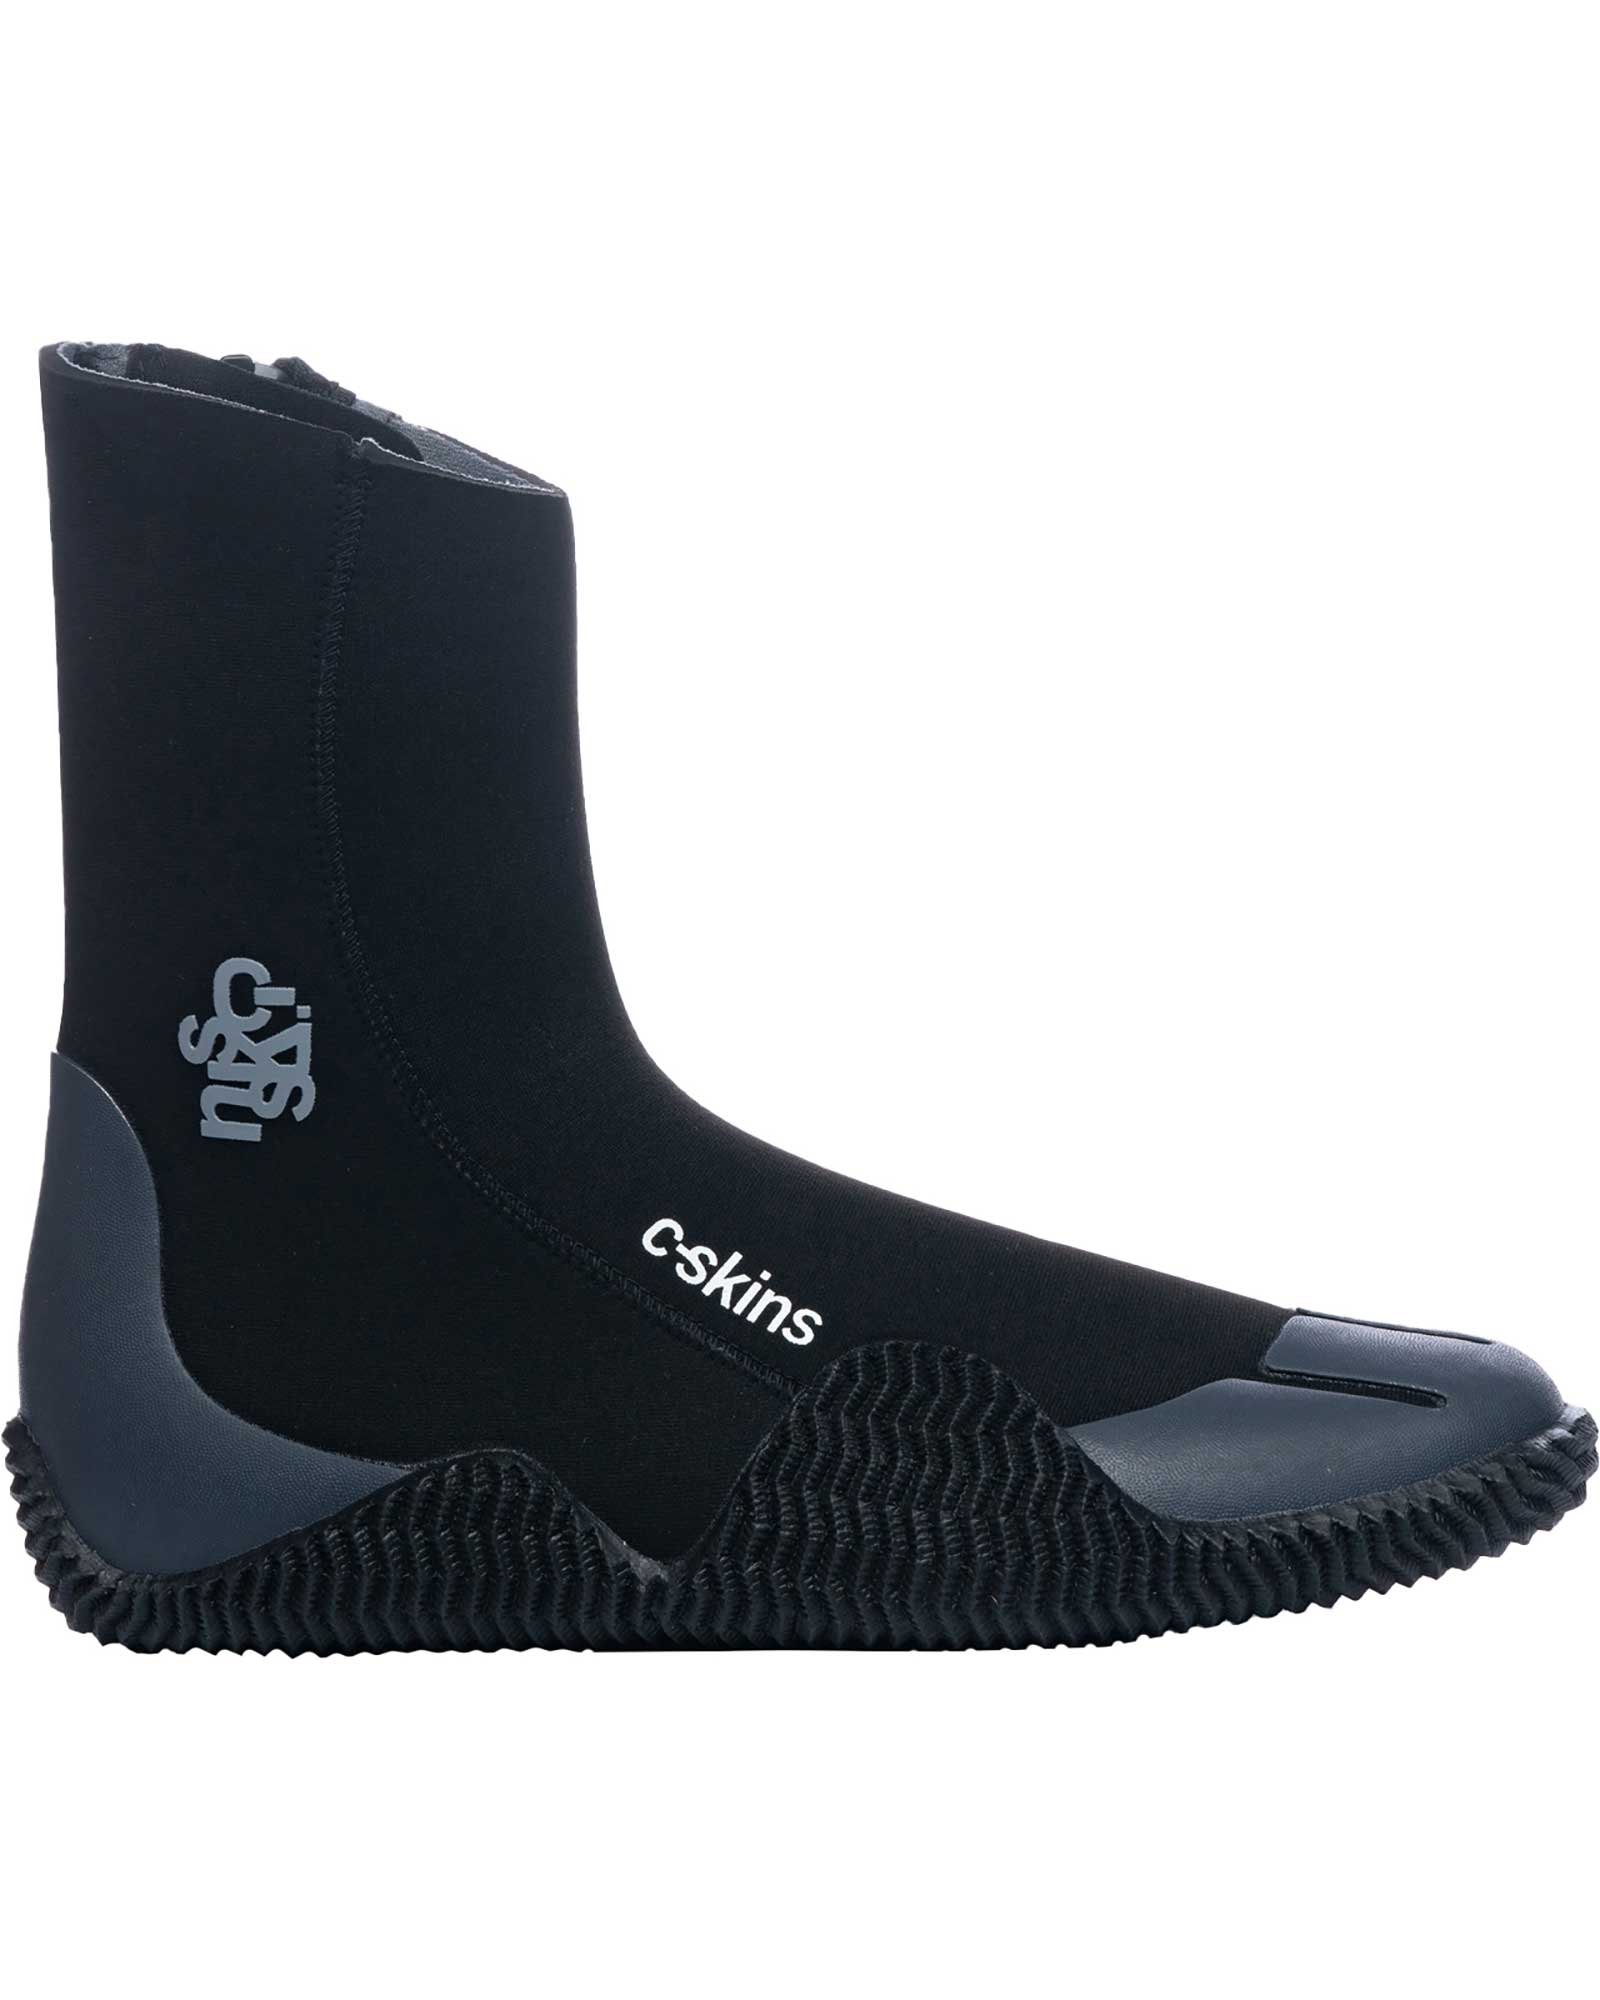 C Skins Legend 5mm Zipped Boots - Black/Charcoal UK 11